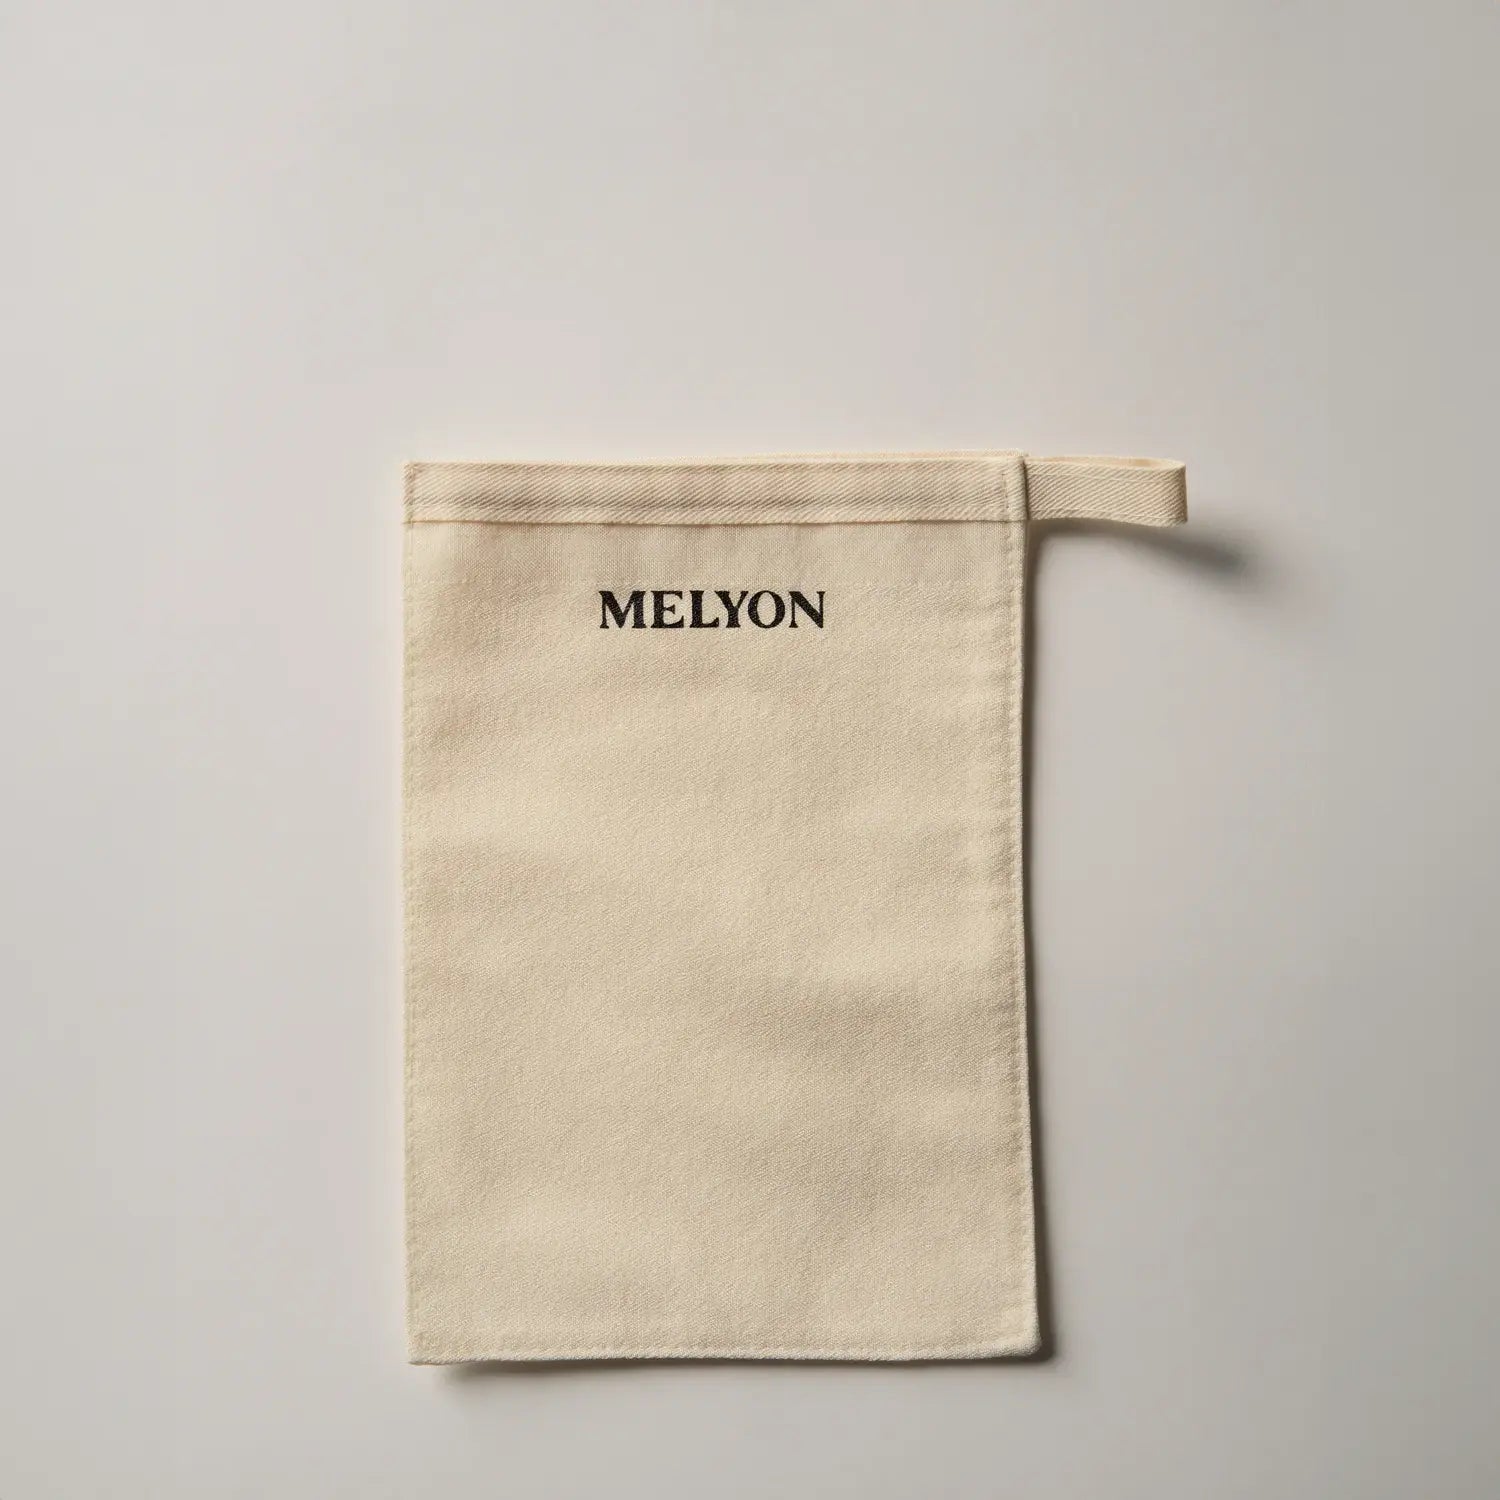 Melyon 沐浴手套